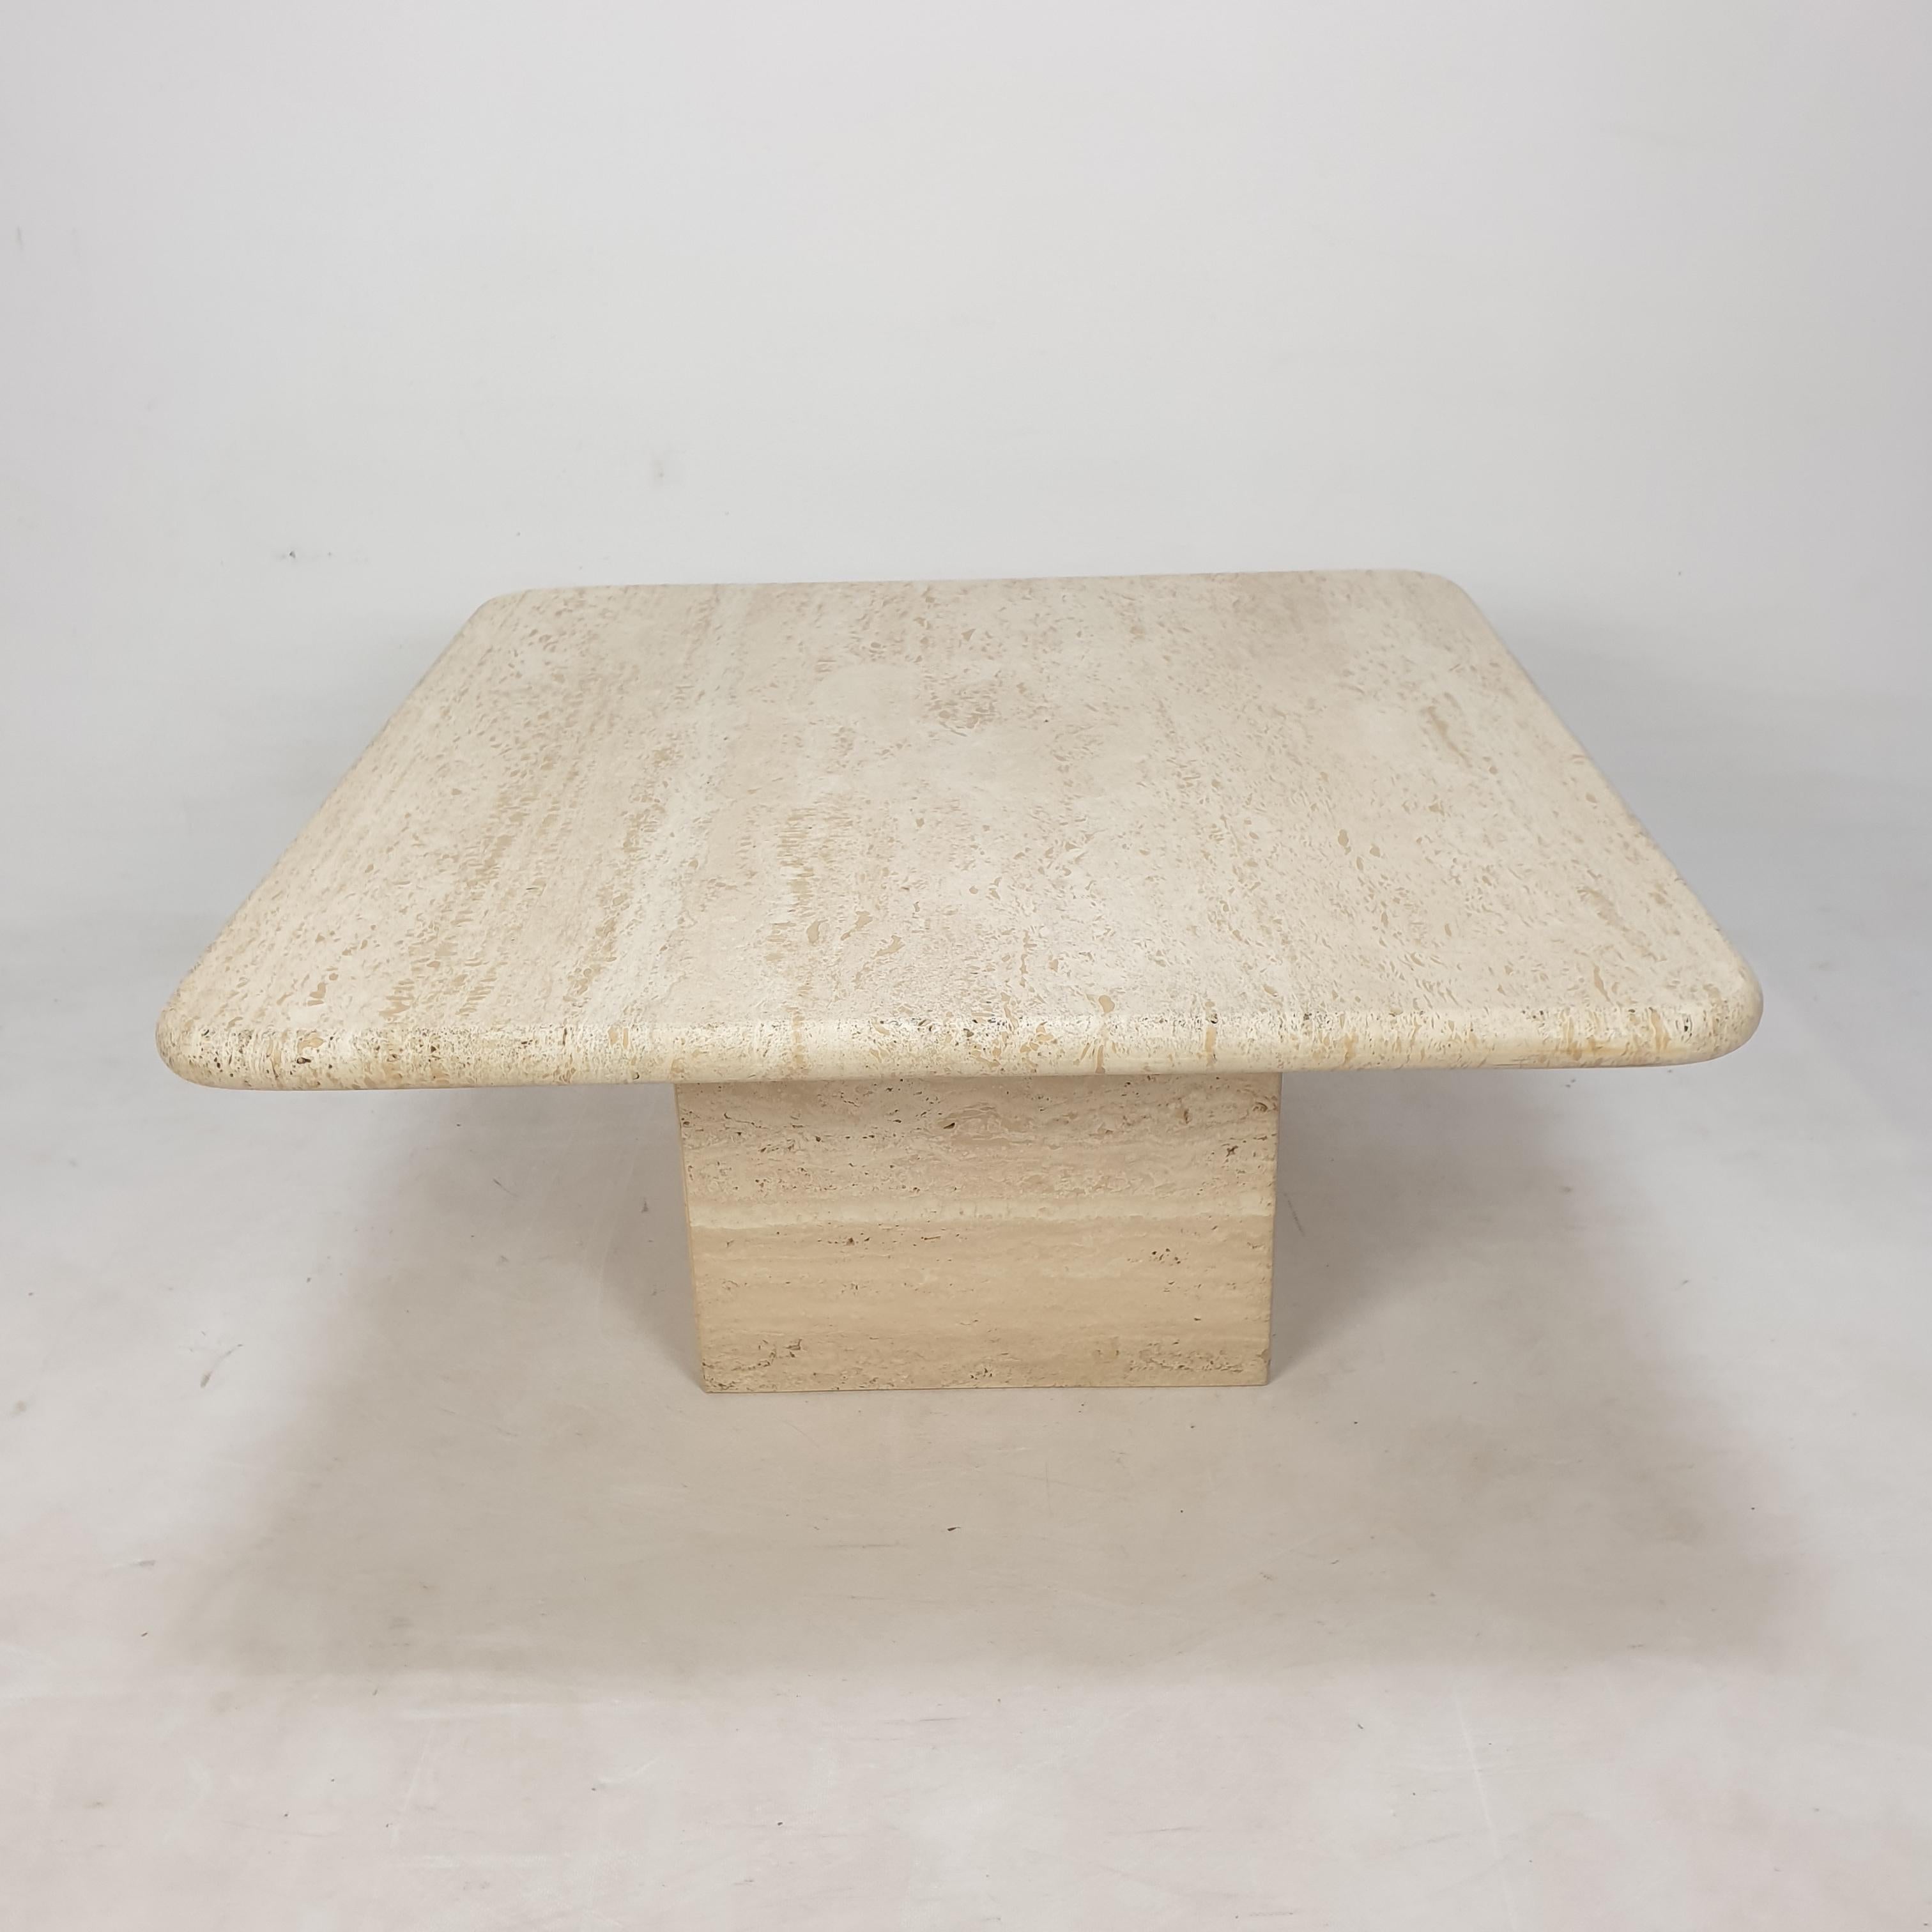 Très belle table basse italienne des années 80, fabriquée à la main en travertin. 

La plaque et la base sont en travertin.